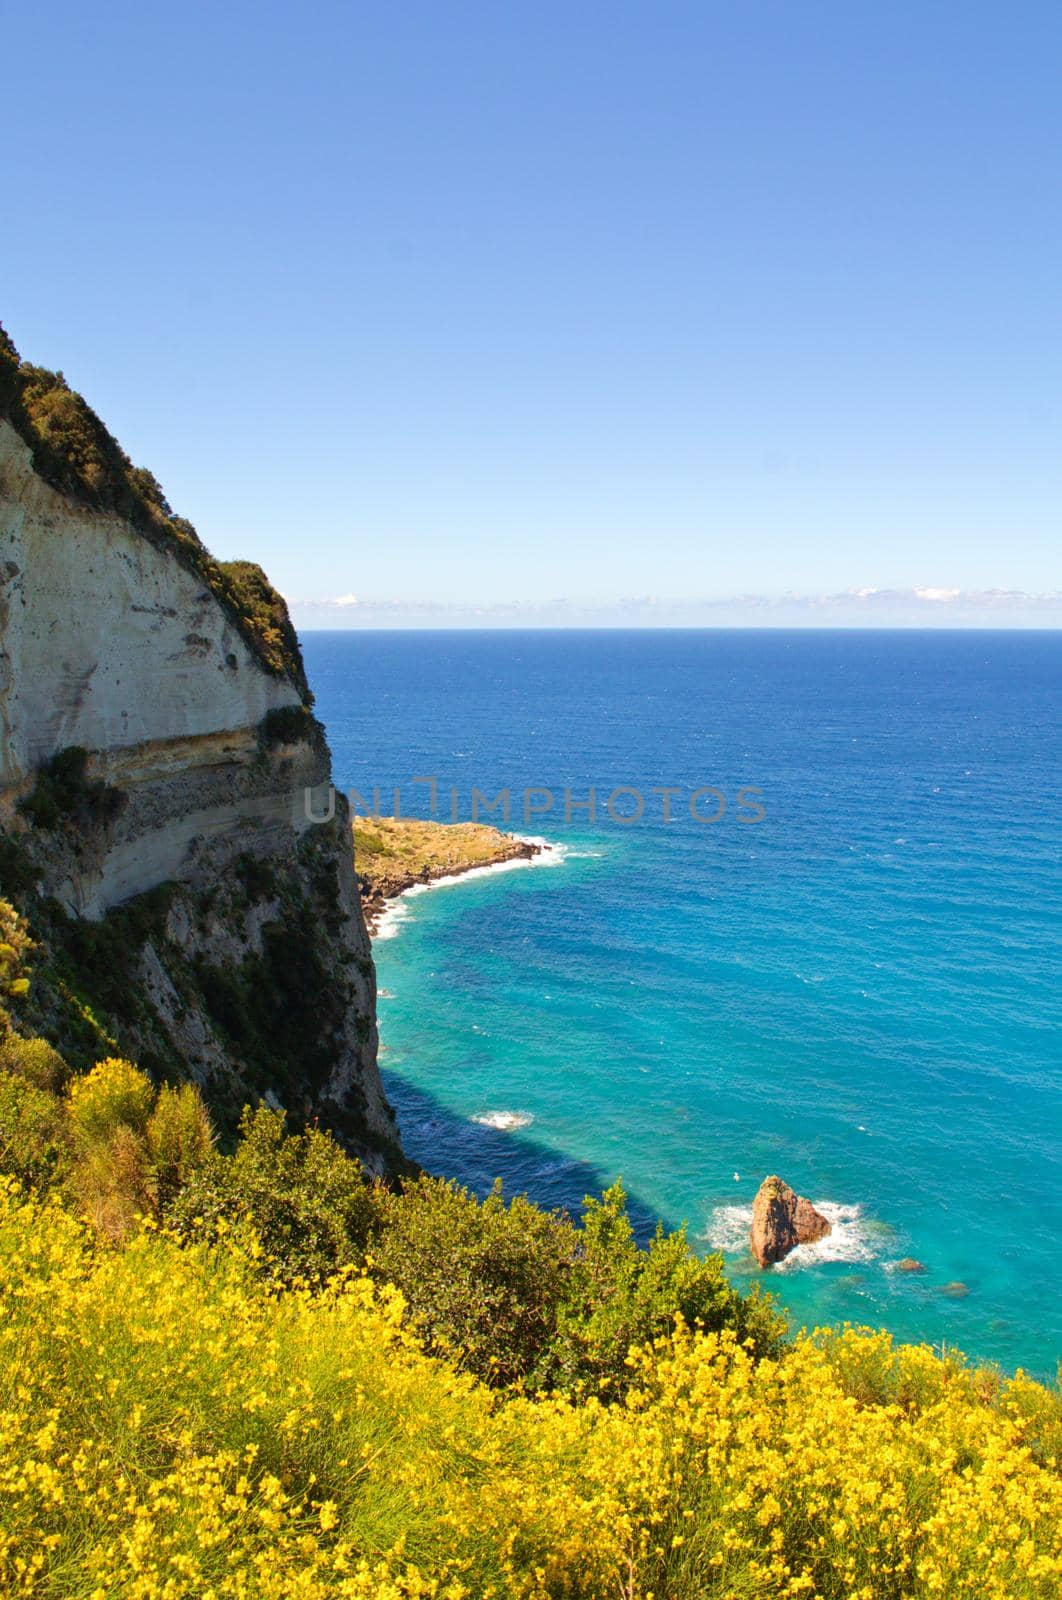 White limestone cliffs in Ponza, Italy by hernan_hyper